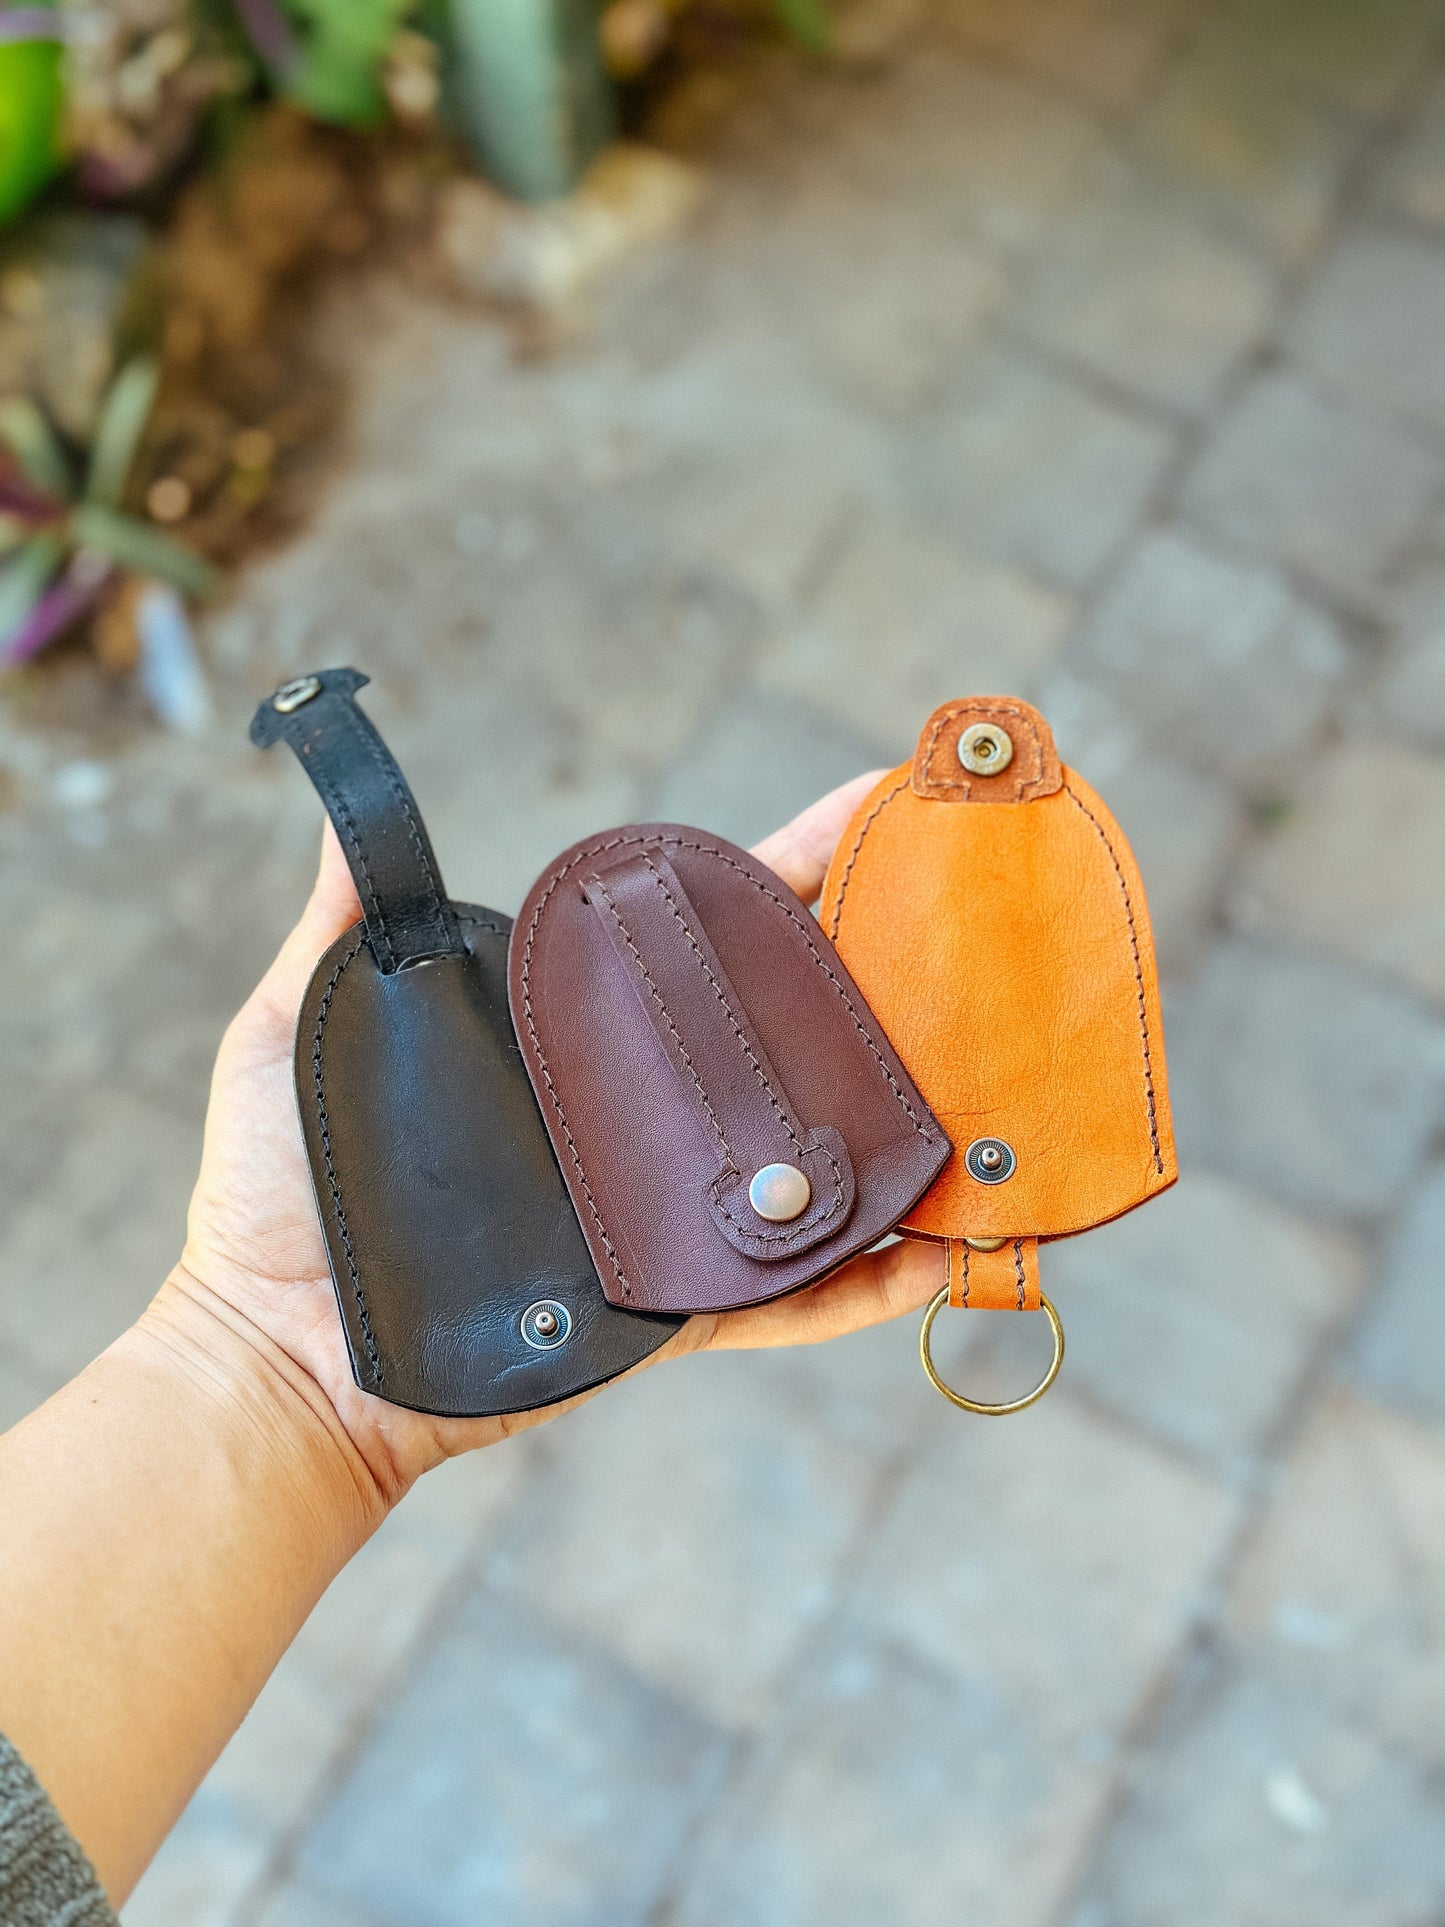 Leather key case